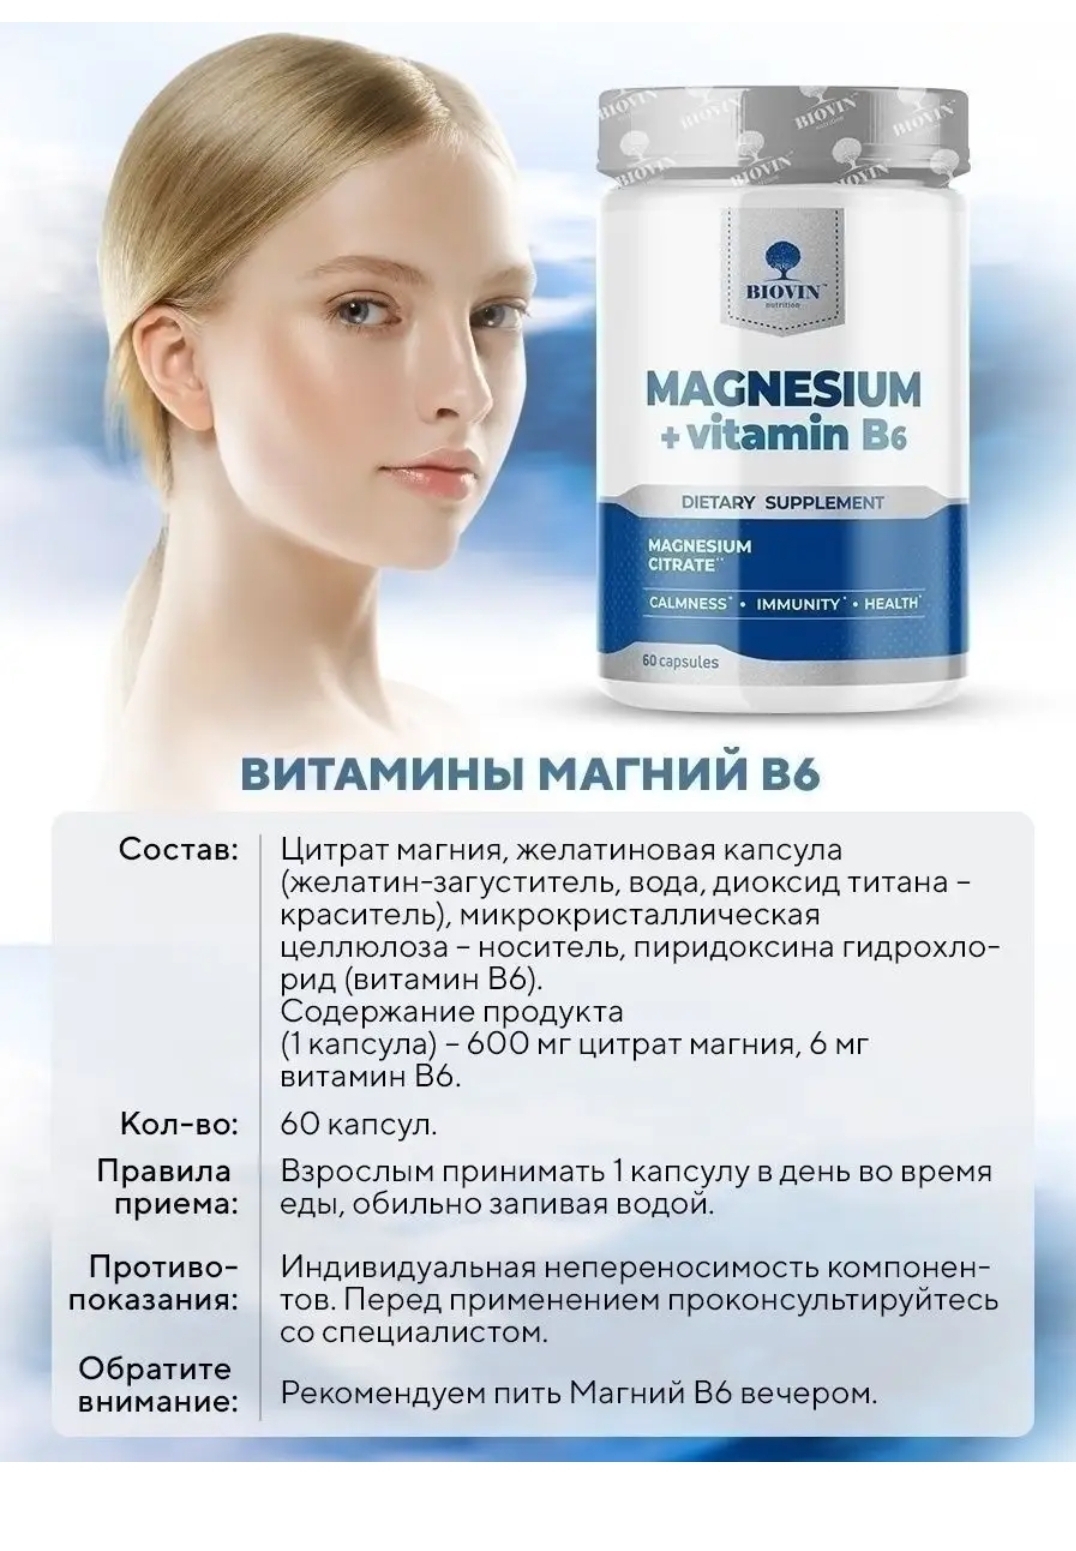 BIOVIN магний. Magnesium Vitamin b6 BIOVIN. Magnesium + Vitamin b6 капсулы. Витамины Magnesium Citrate BIOVIN. Когда принимать витамин магний